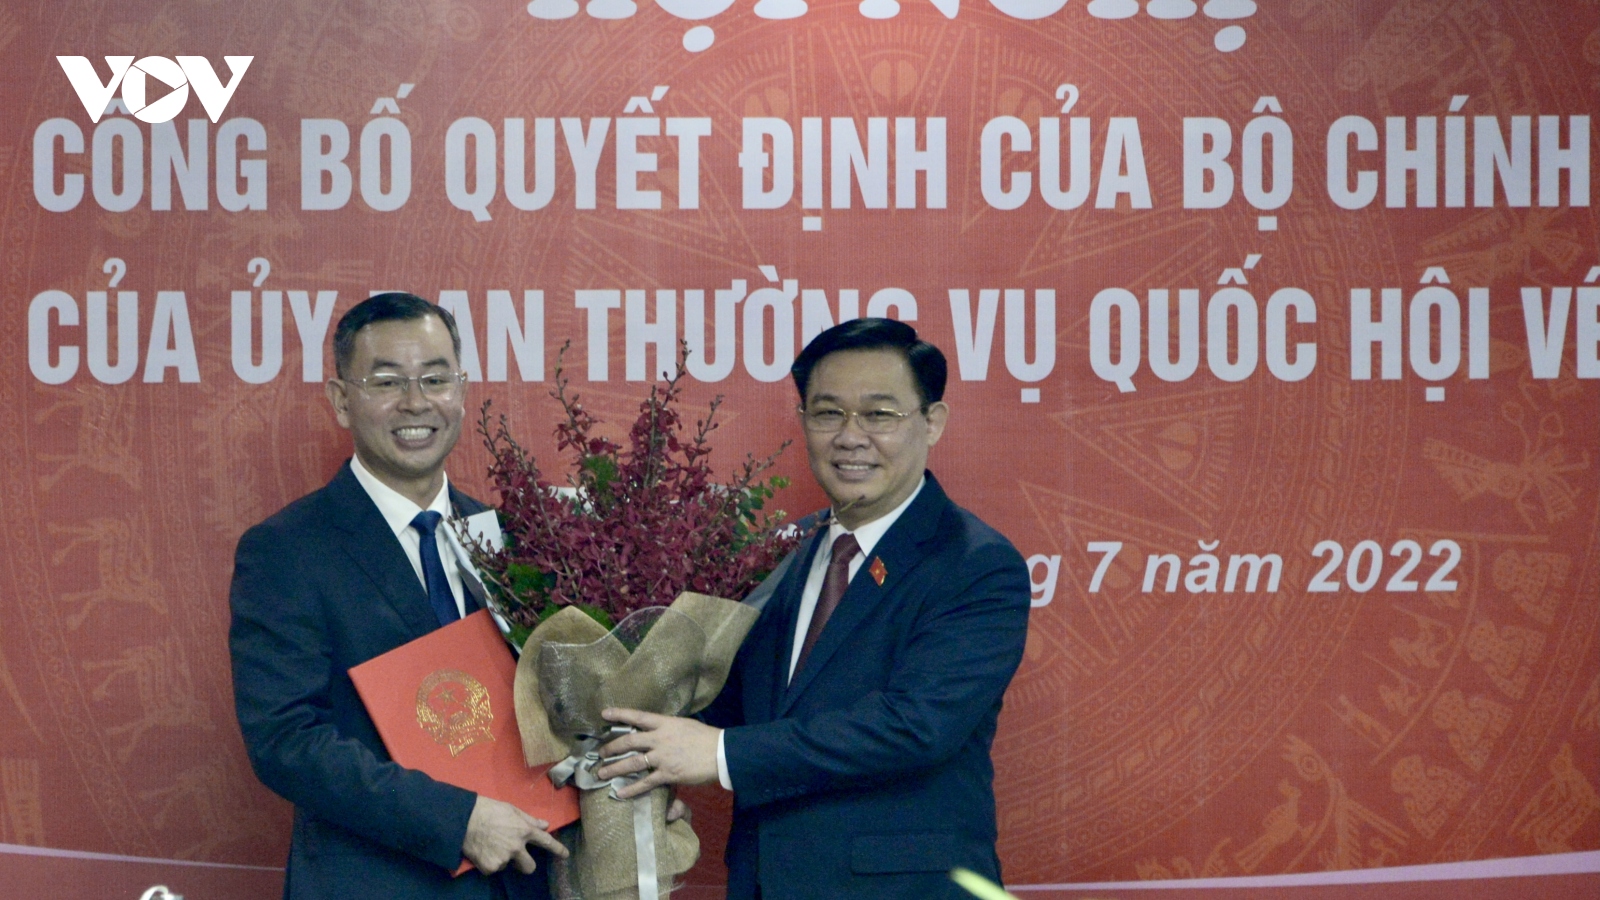 Ông Ngô Văn Tuấn giữ chức Phó Tổng Kiểm toán phụ trách Kiểm toán Nhà nước